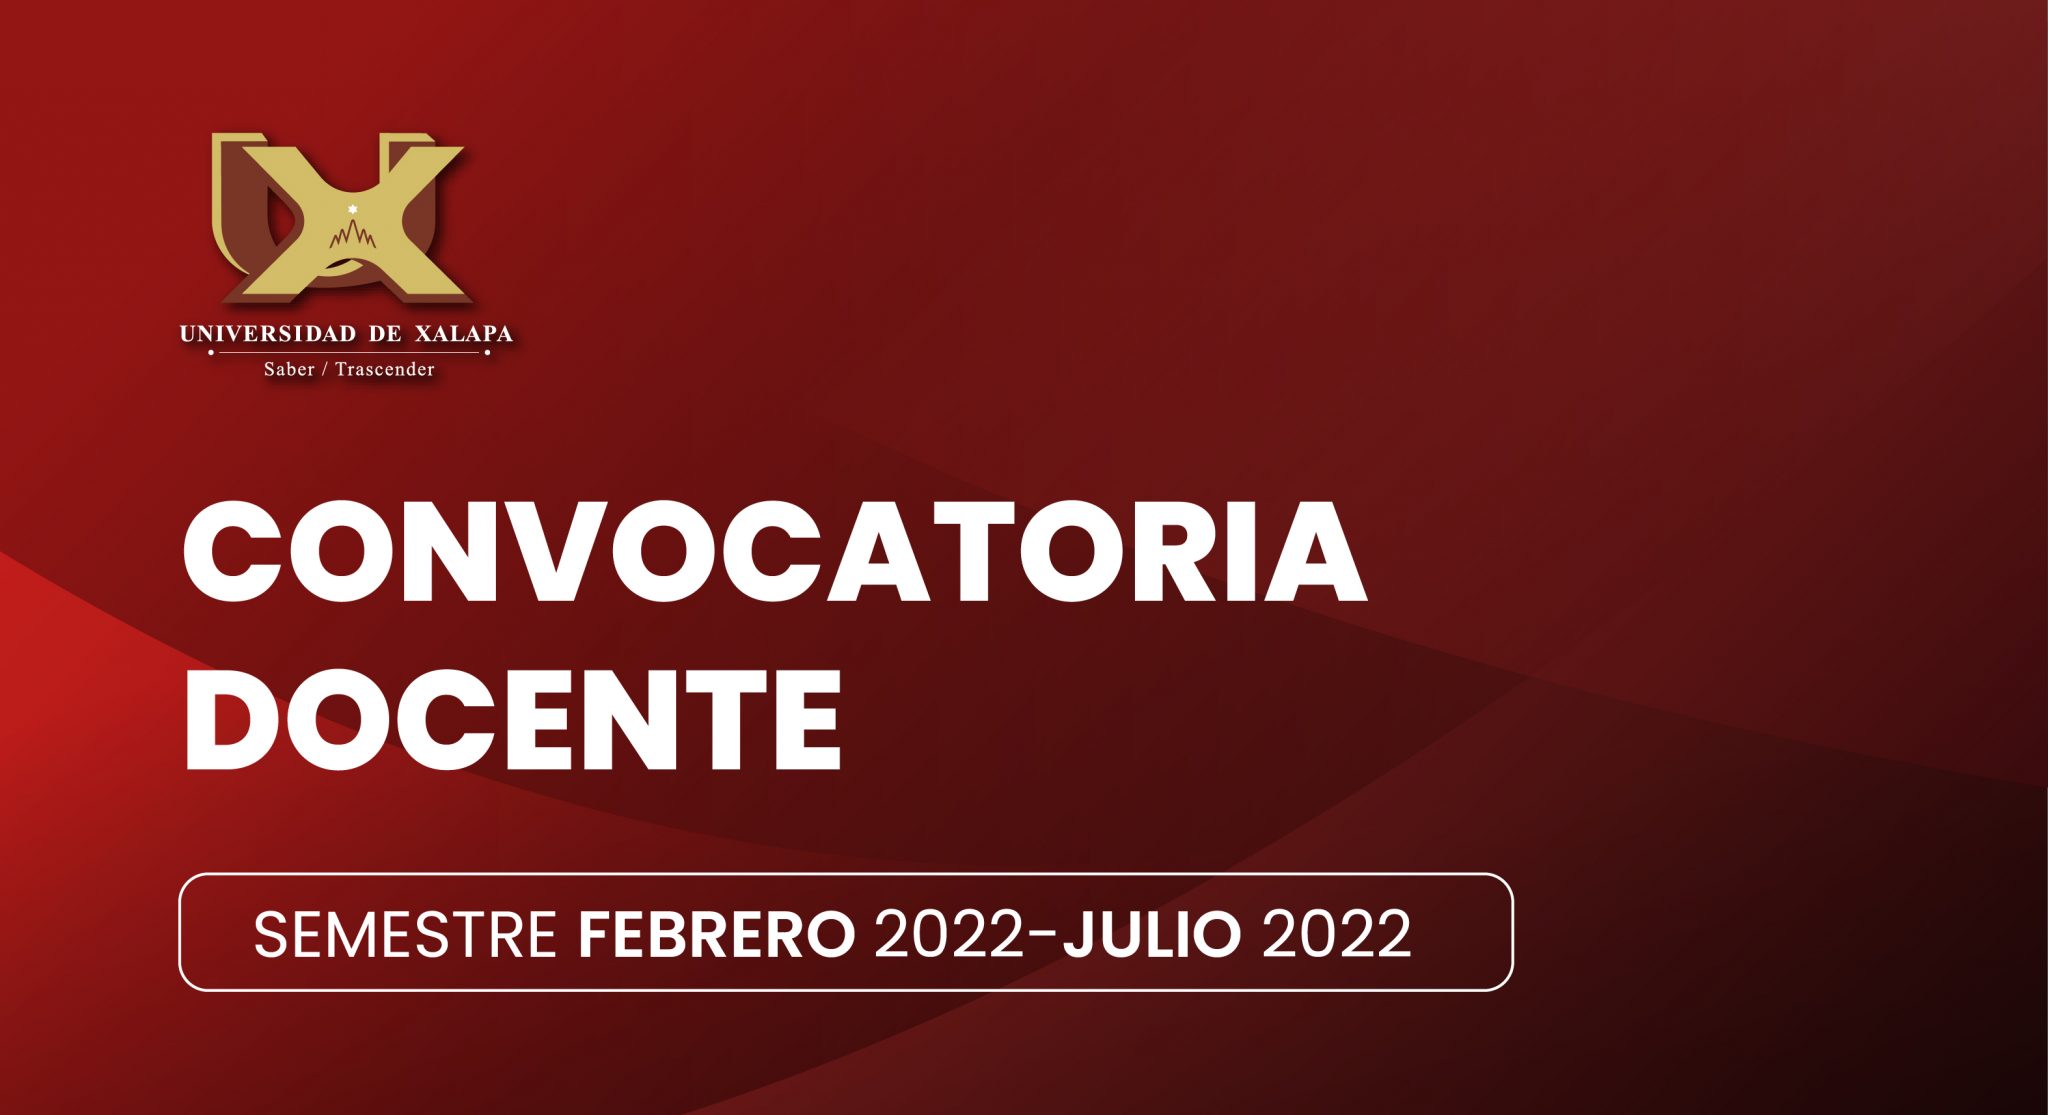 CONVOCATORIA PARA PARTICIPAR COMO DOCENTE POR HORAS EN EL SEMESTRE FEBRERO 2022 – JULIO 2022